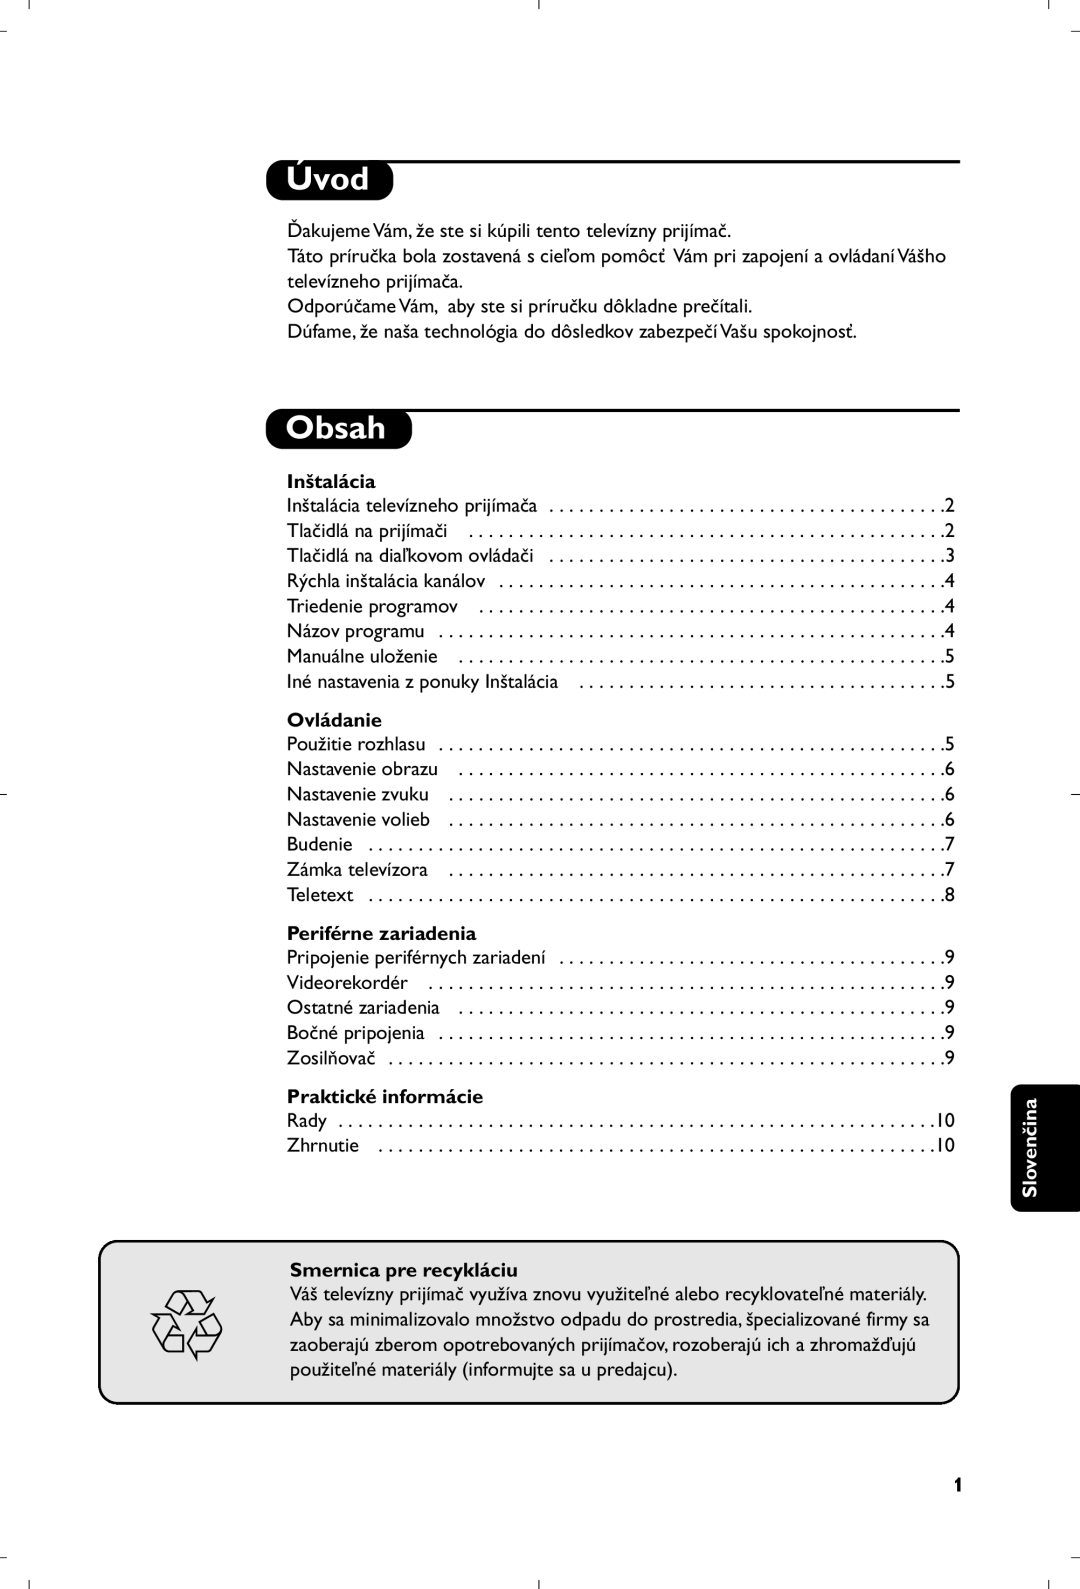 Philips 21PT4457/58 manual Úvod, Inštalácia, Ovládanie, Periférne zariadenia, Praktické informácie, Smernica pre recykláciu 